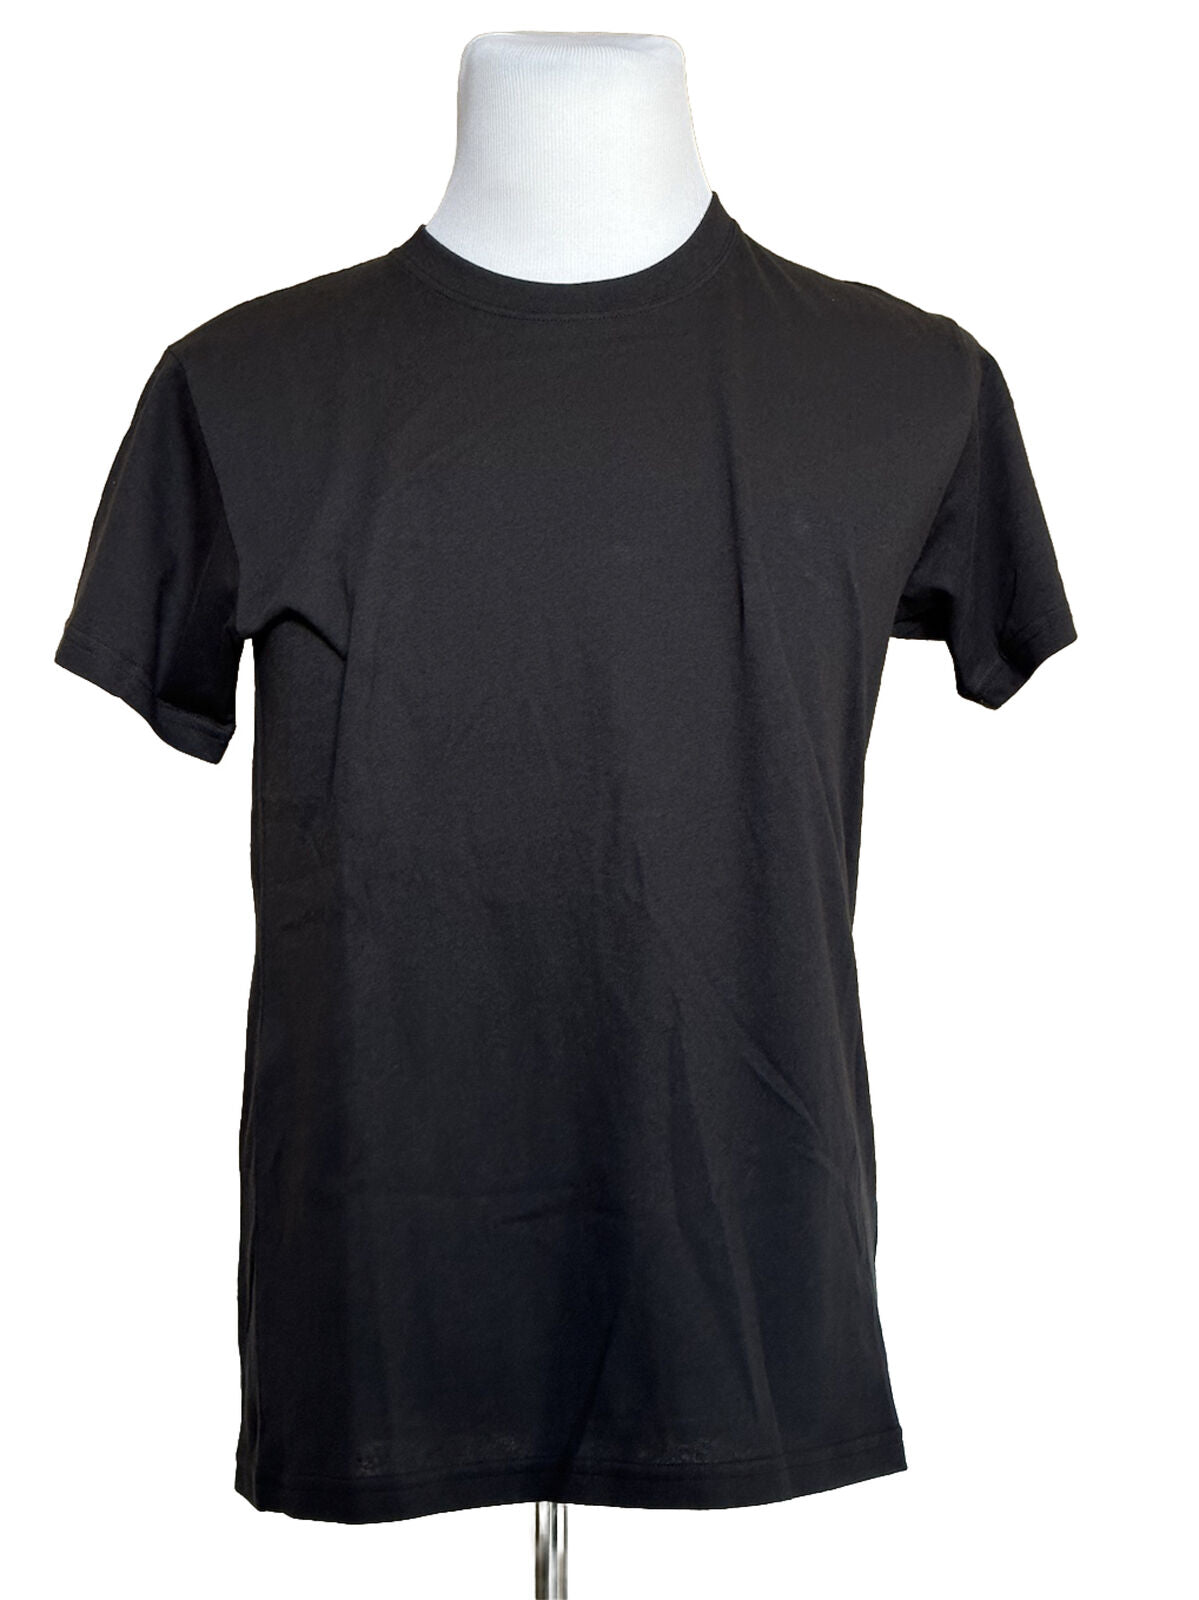 NWT Bottega Veneta Women's Sunset Light Cotton Top T-shirt Size 42 613935